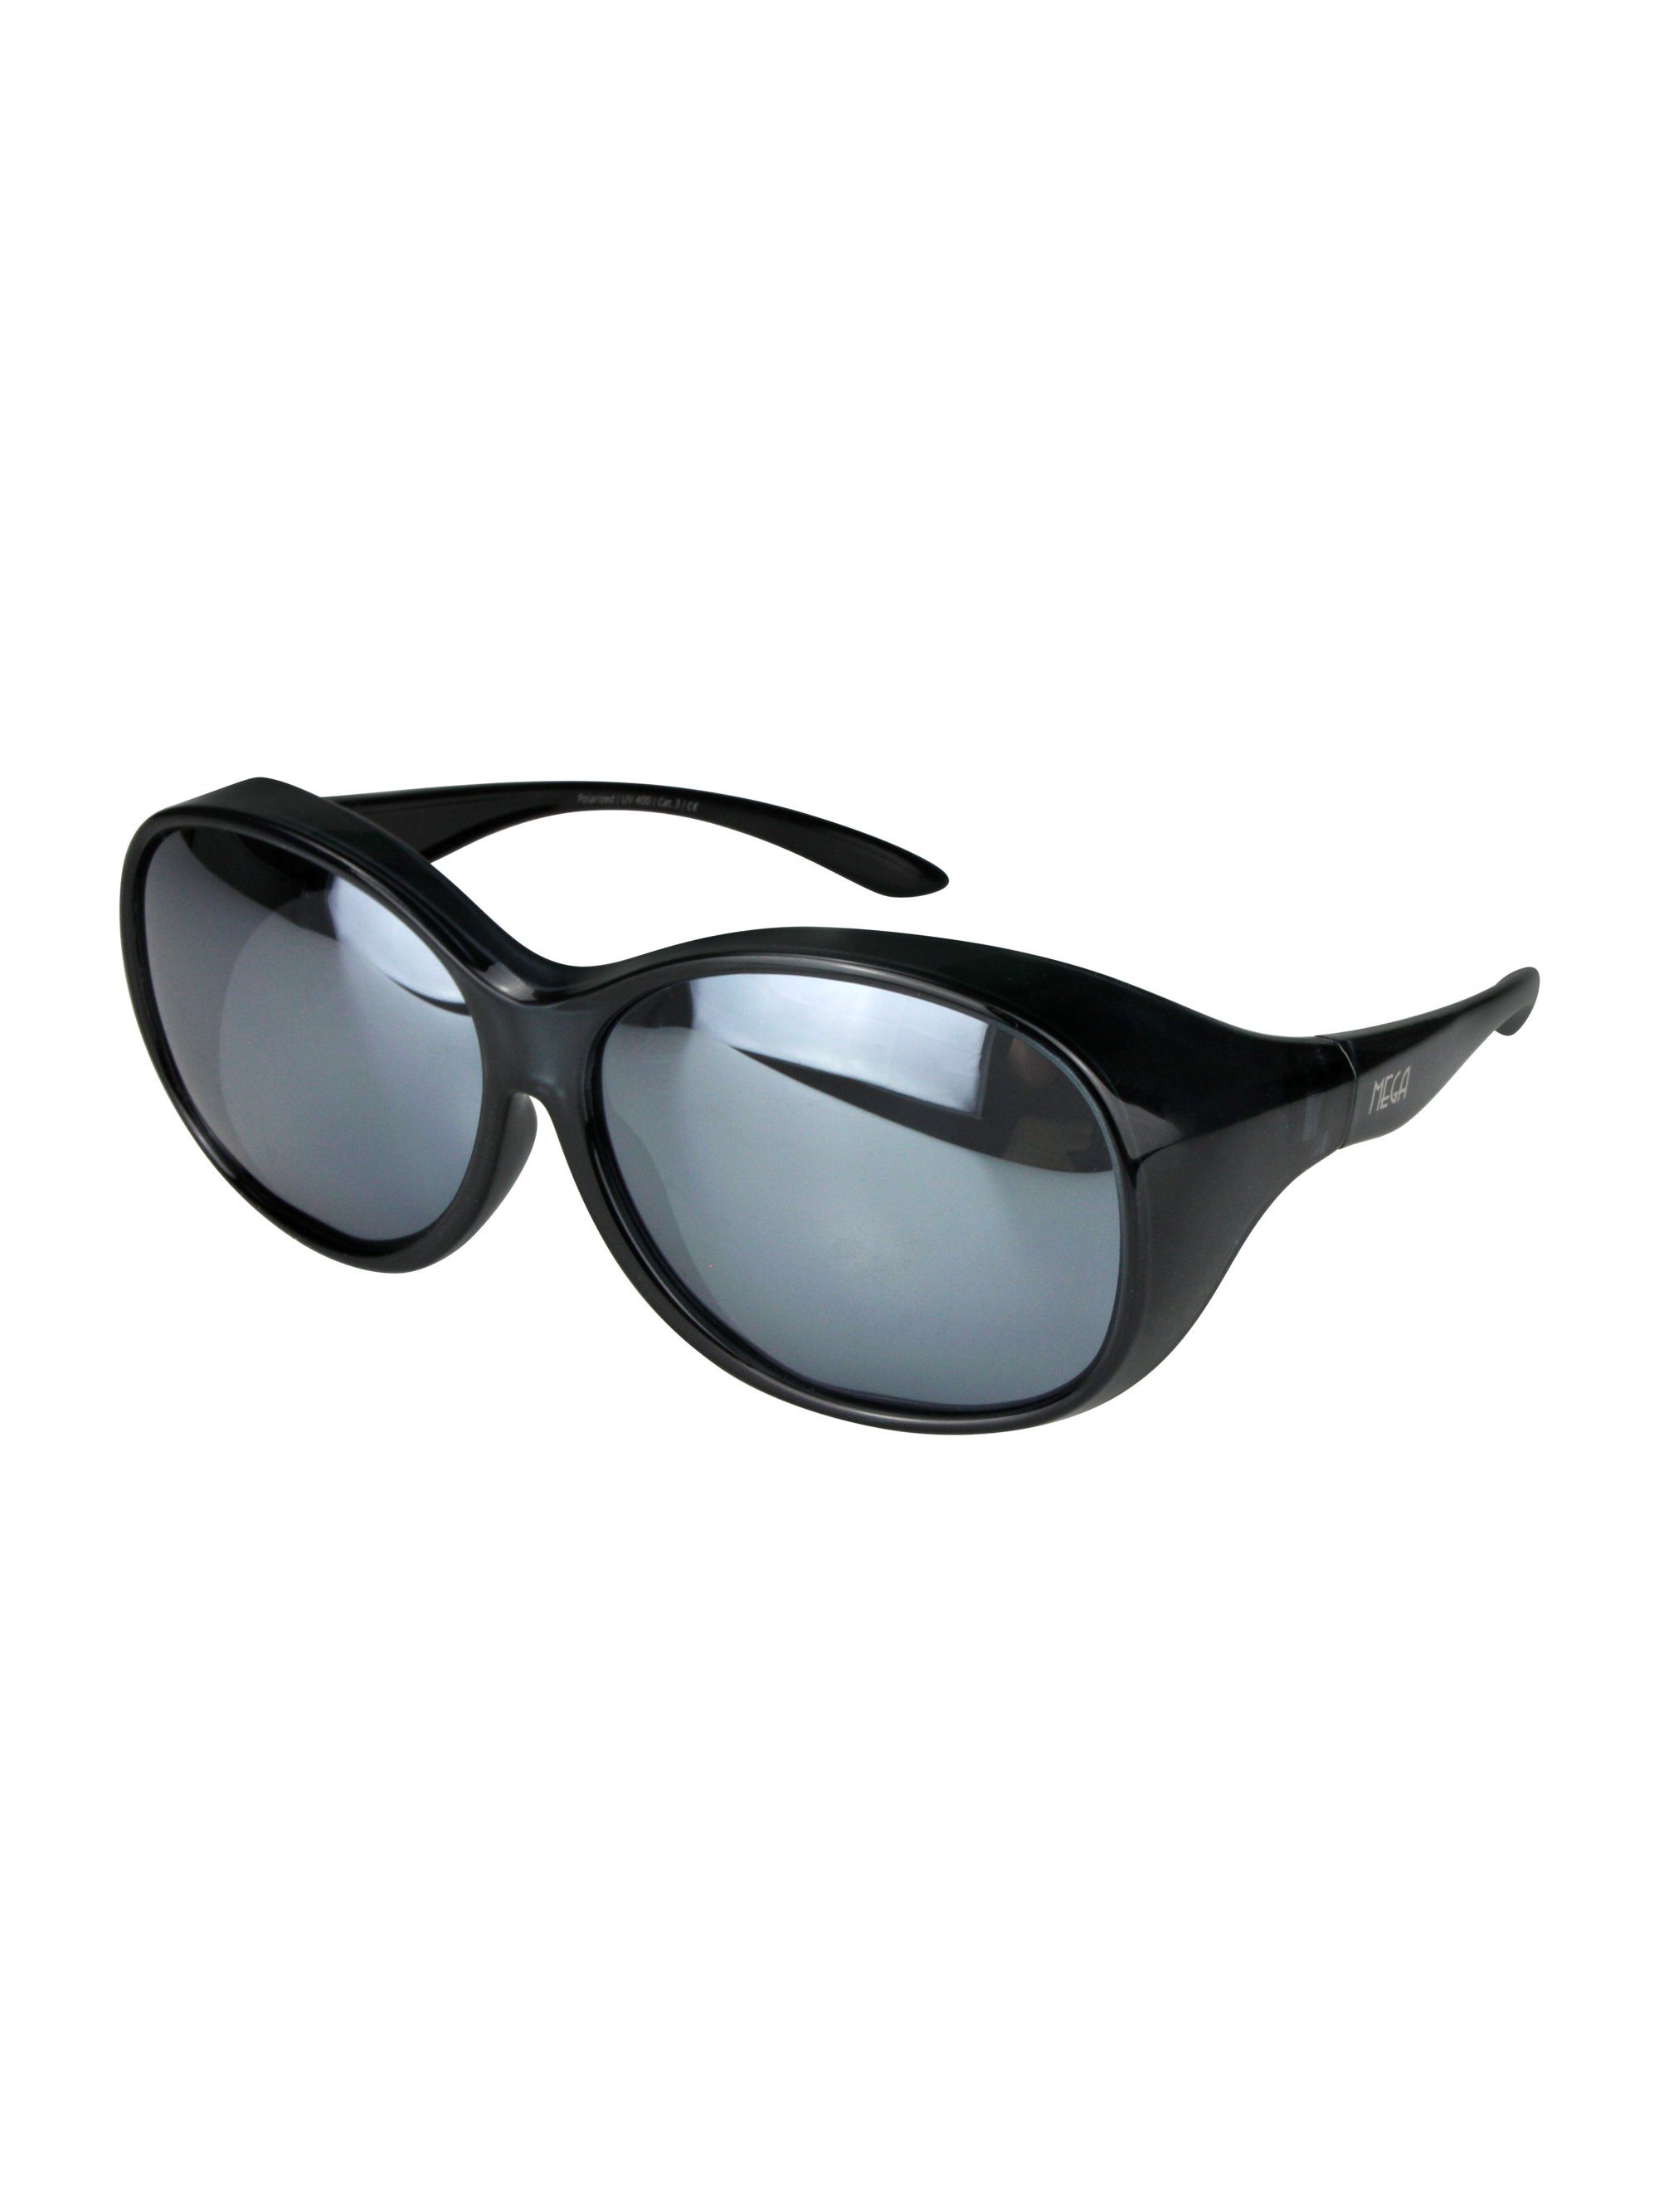 Stil Brillenputztuch) MEGA verspiegelt (inklusive Schiebebox Damen ActiveSol Vintage SUNGLASSES und Überziehsonnenbrille Sonnenbrille Schwarz